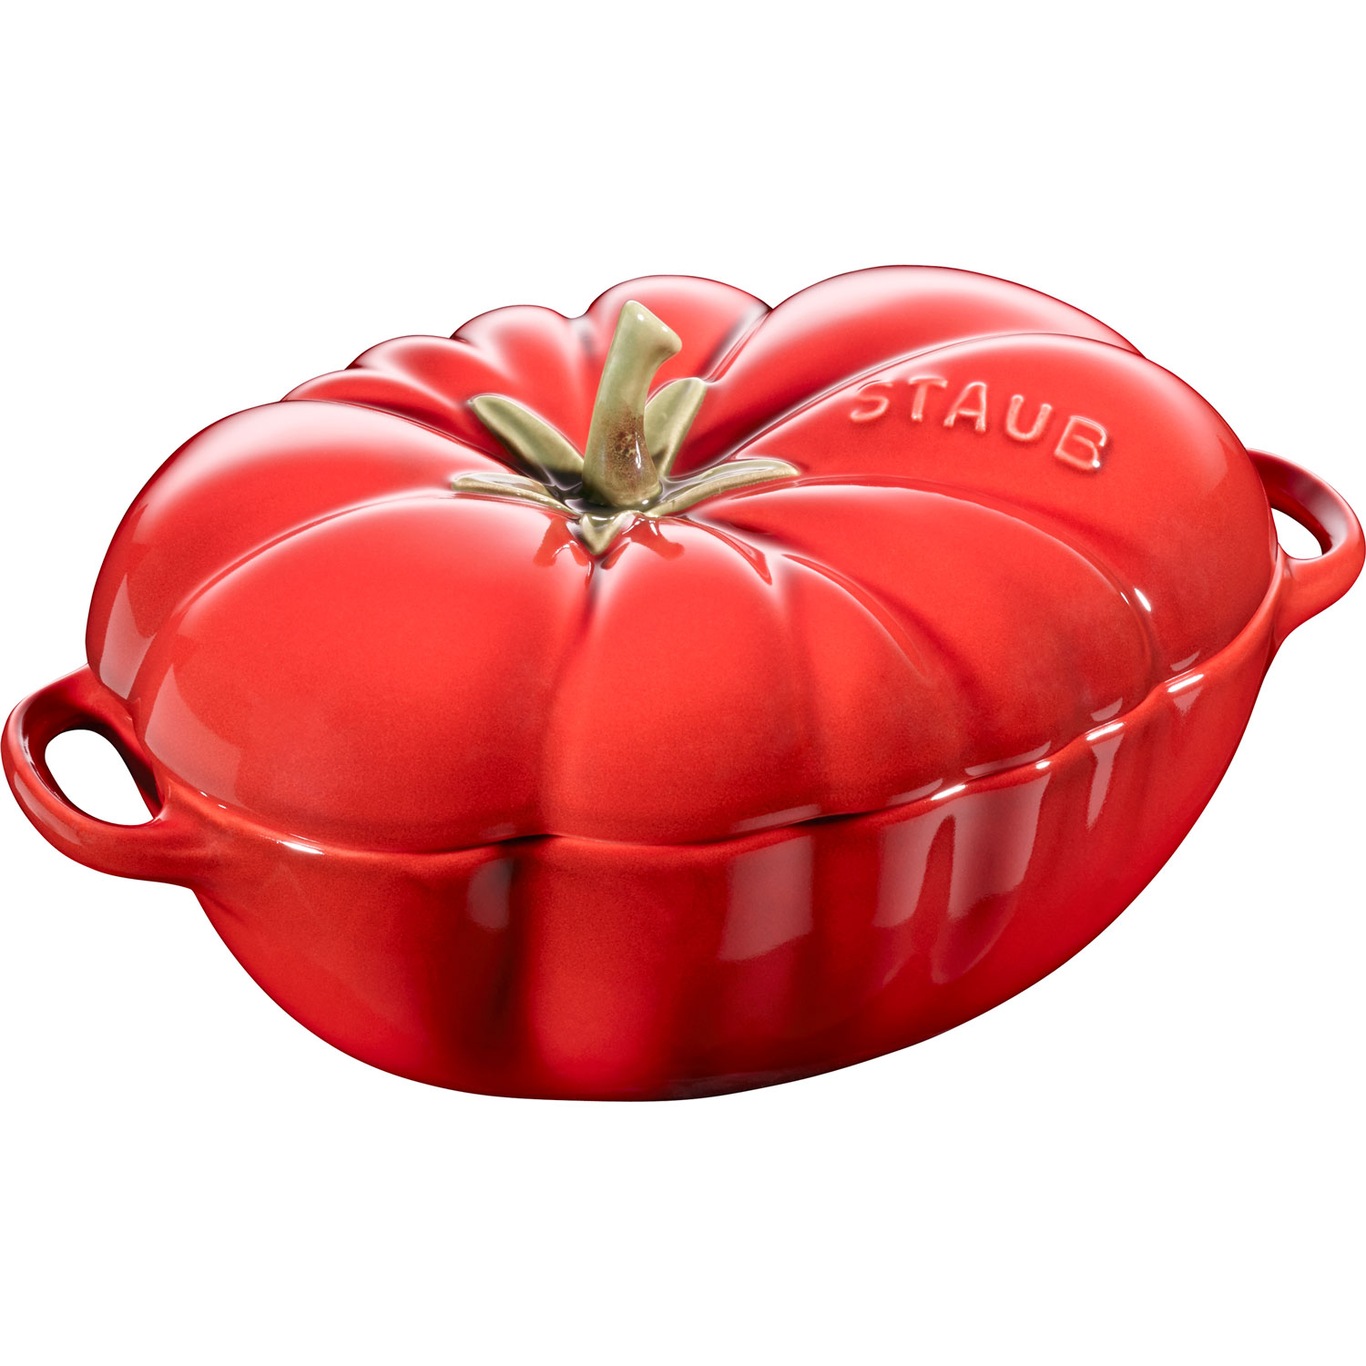 Gryte Tomat Mini 47cl, Rød